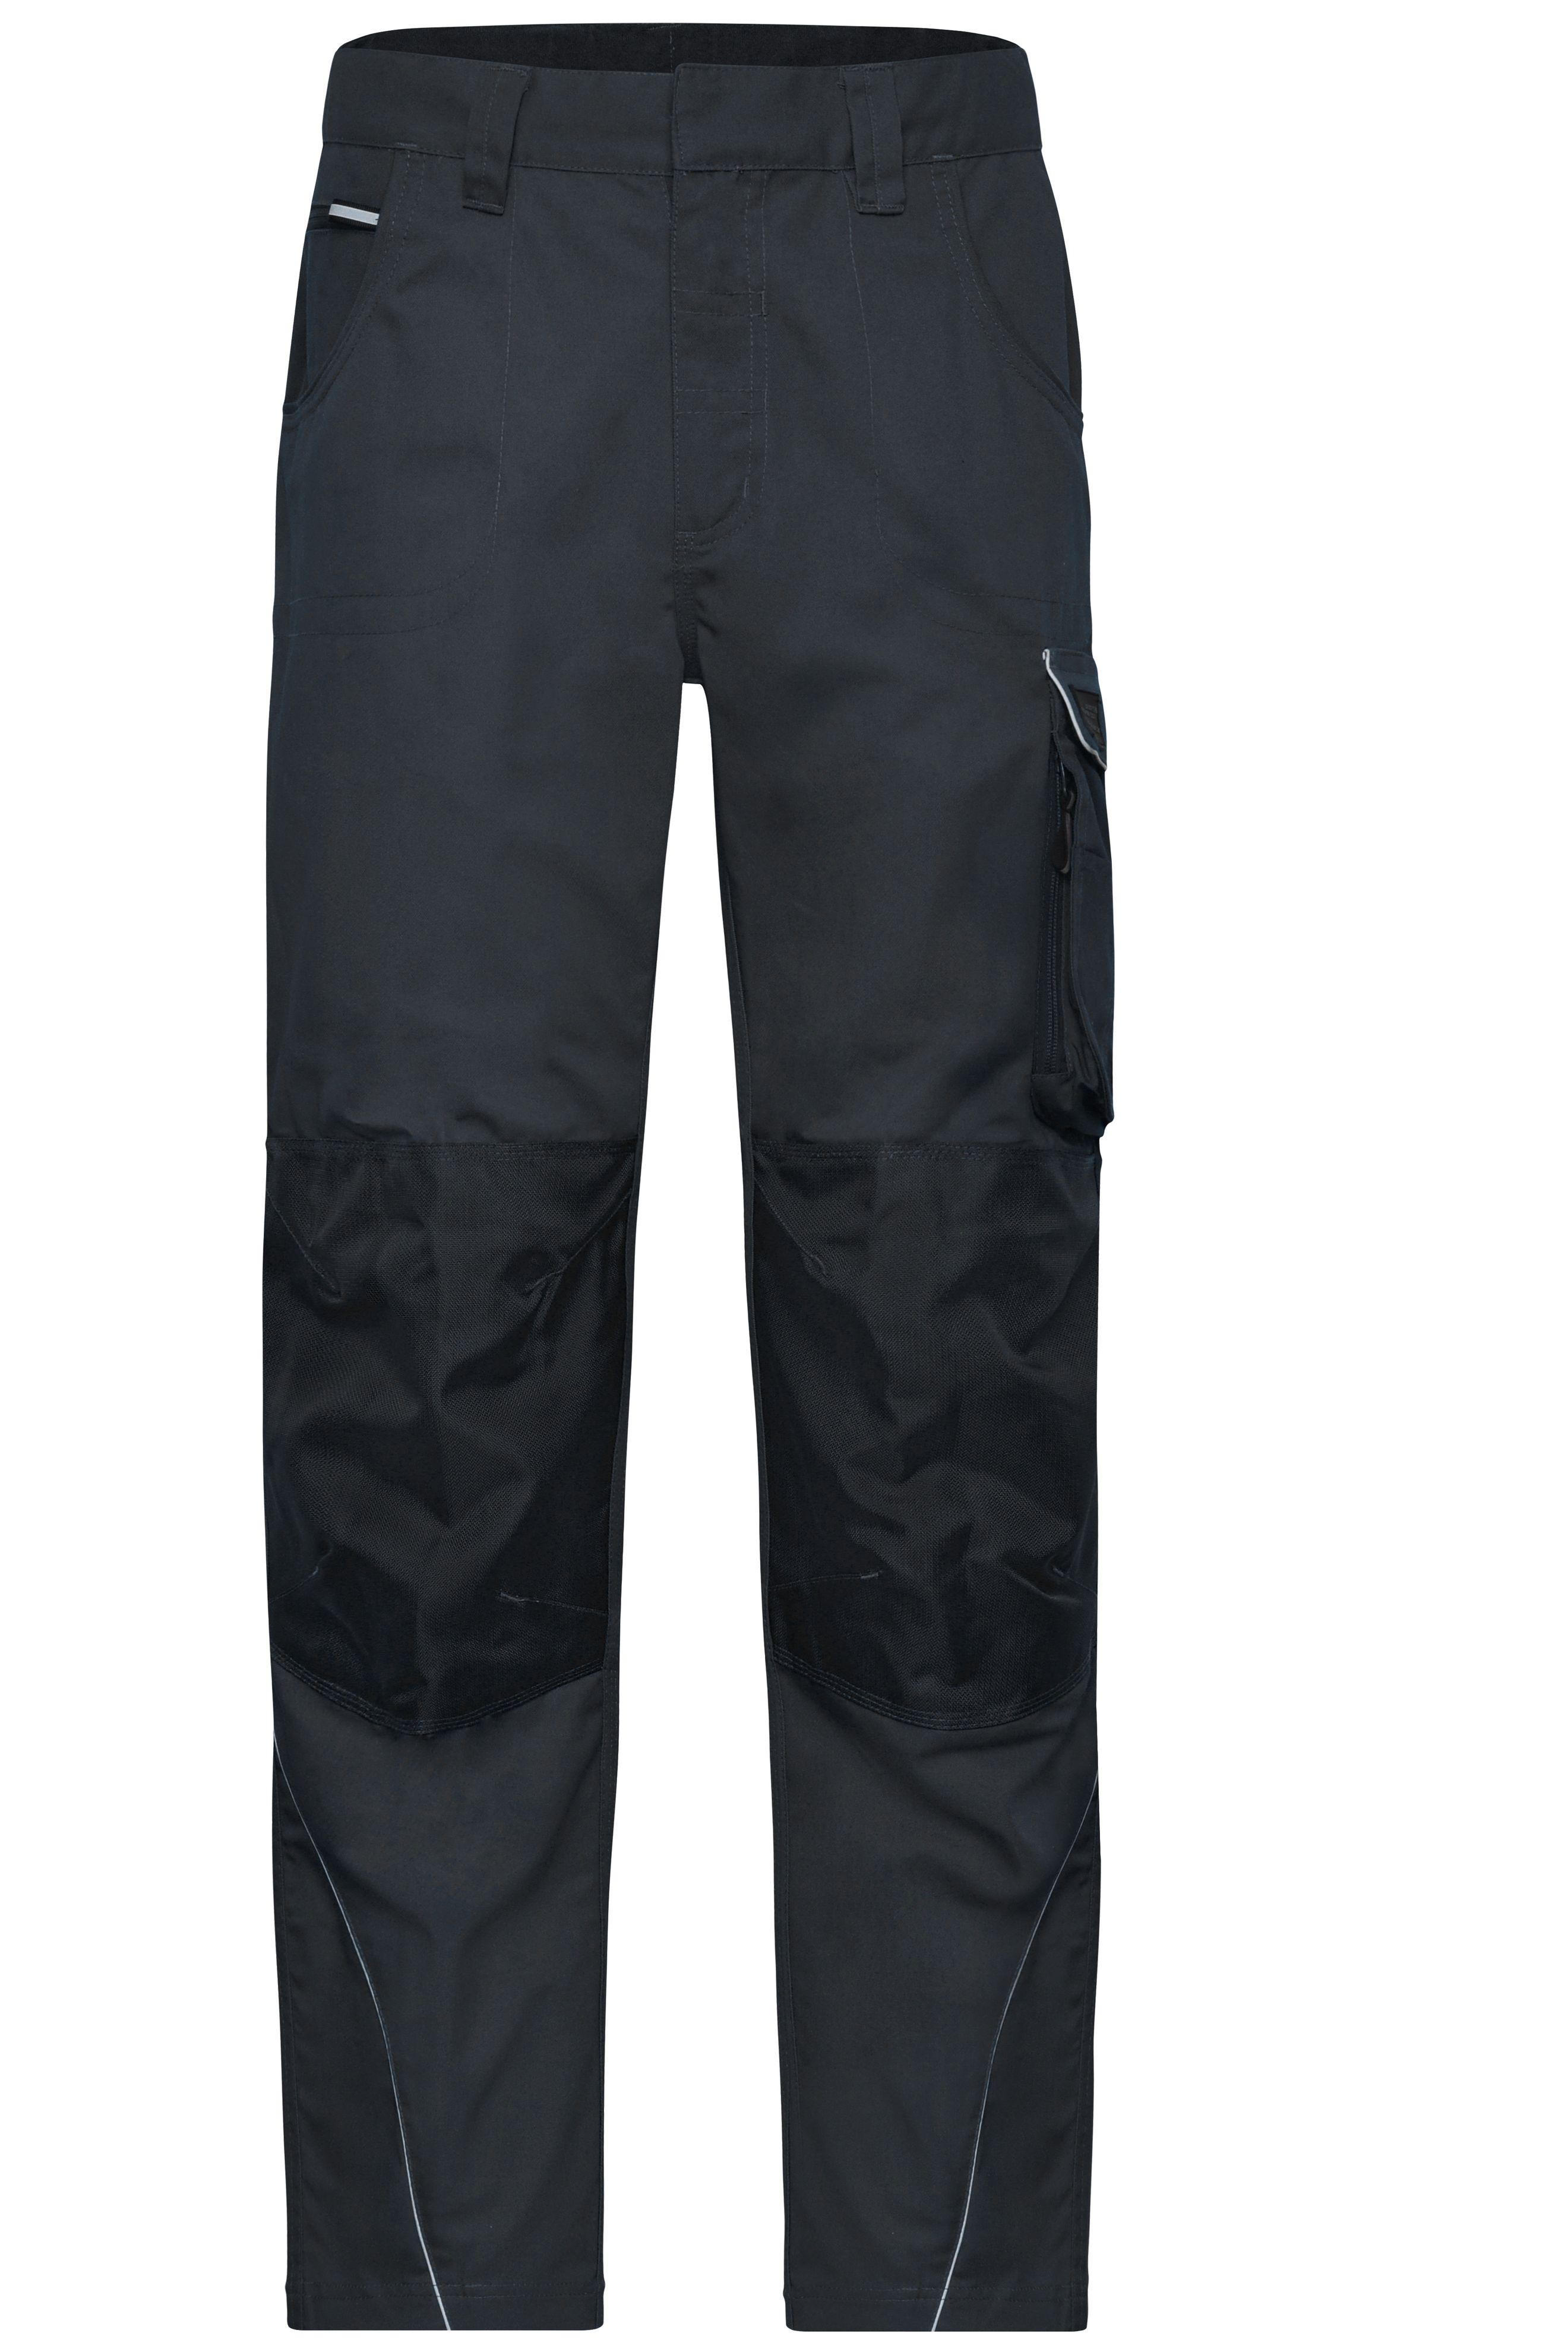 Workwear Pants - SOLID - JN878 Funktionelle Arbeitshose im cleanen Look mit hochwertigen Details